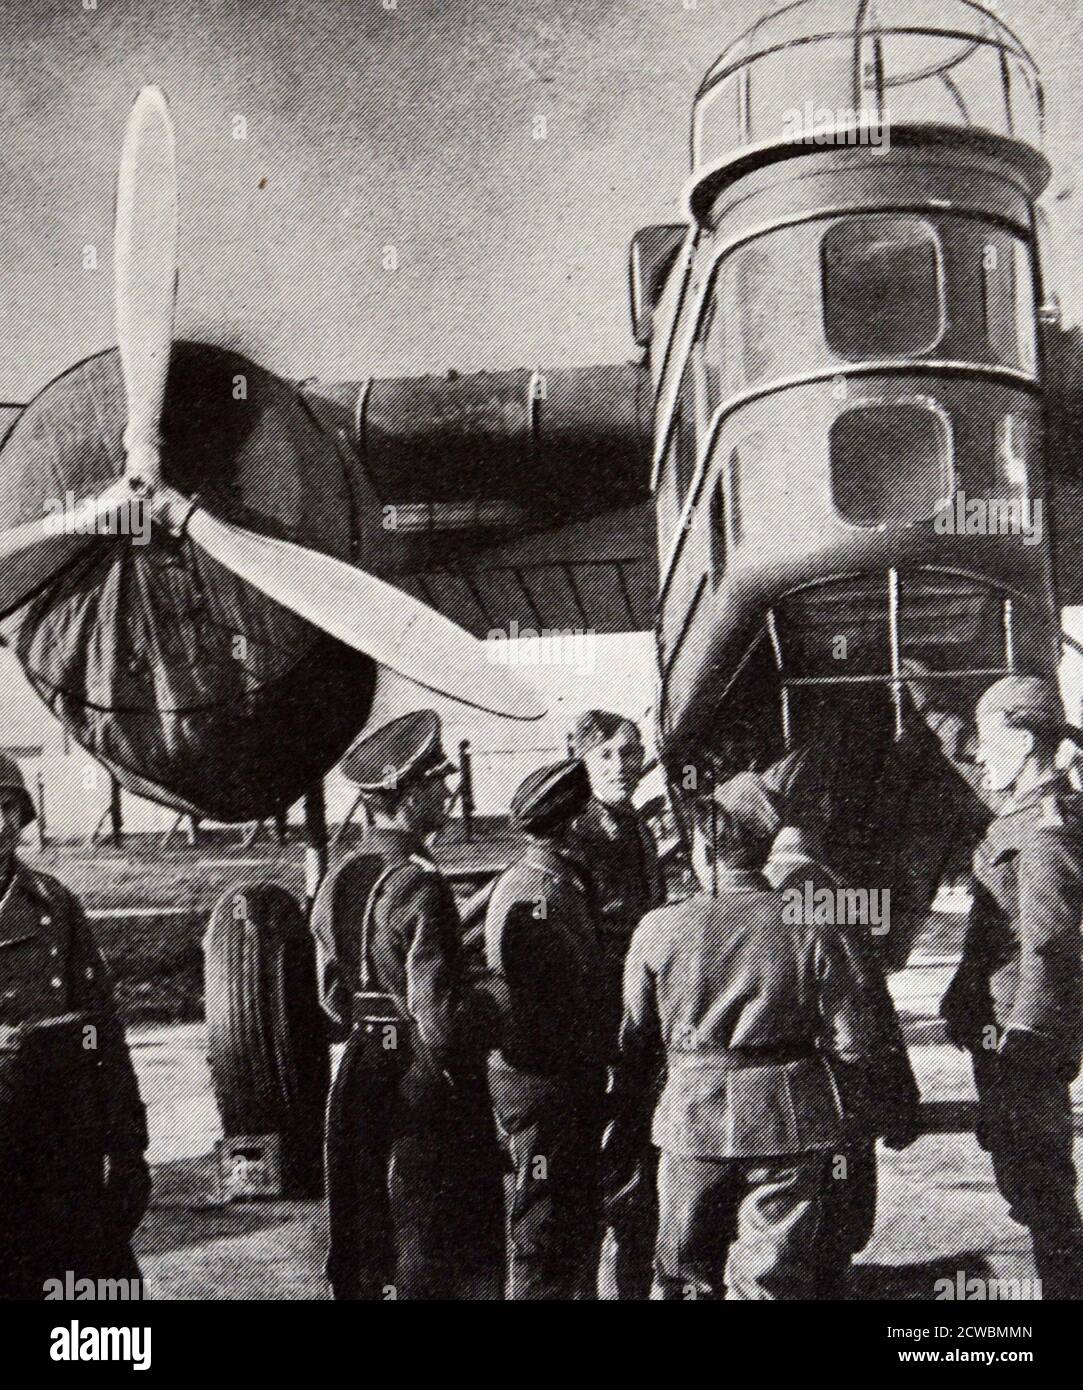 Fotografía en blanco y negro del equipo militar checo entregado a los alemanes. Foto de stock